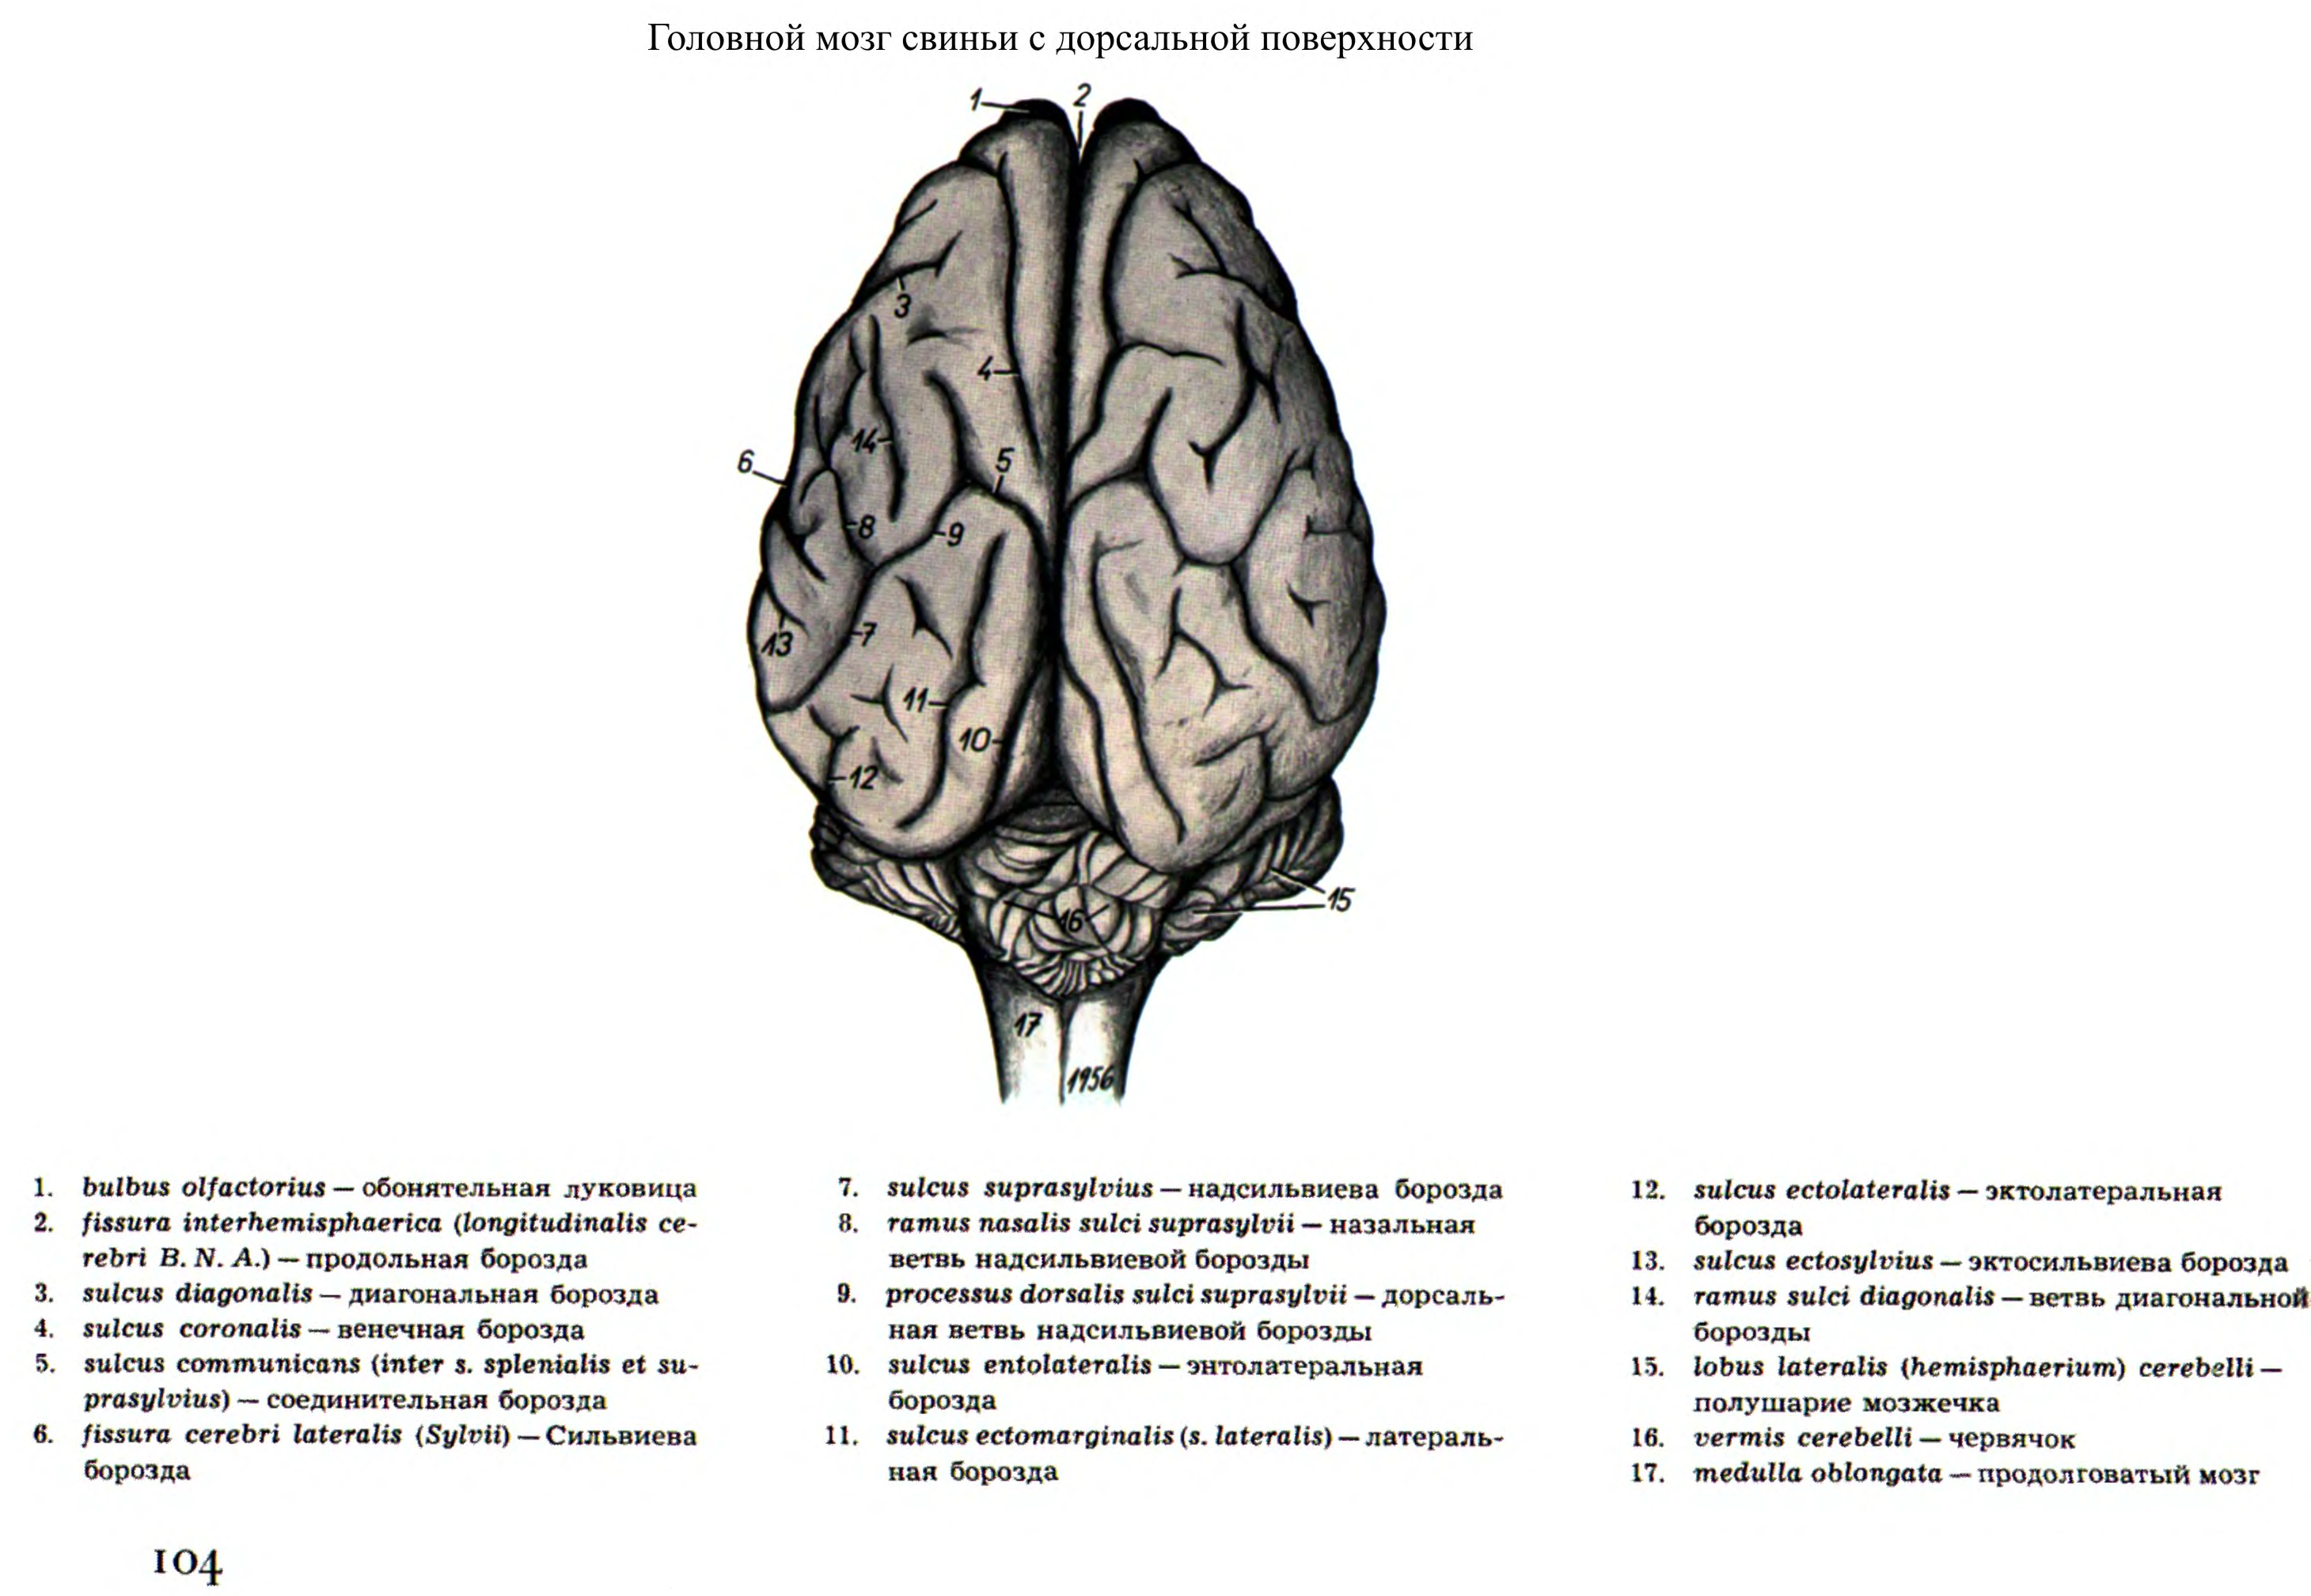 Дорсальная поверхность мозга. Строение головного мозга КРС. Дорсальная поверхность головного мозга лошади. Головной мозг КРС анатомия.